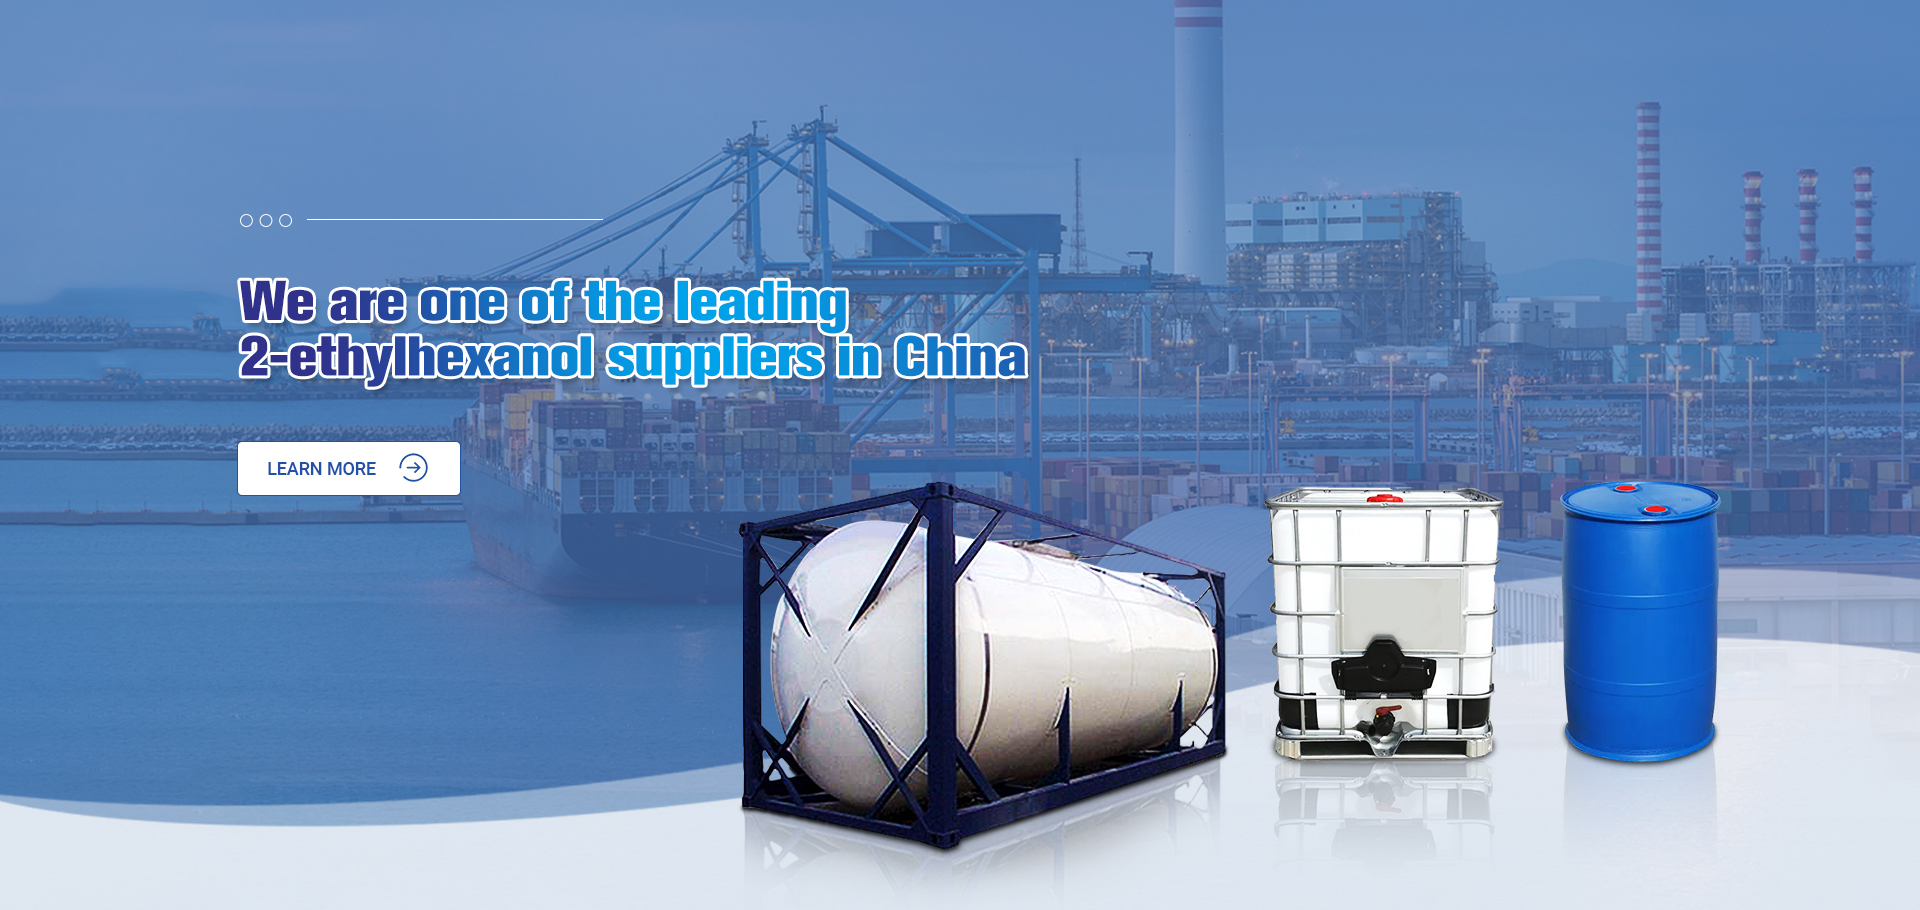 Chúng tôi là một trong những nhà cung cấp 2-ethylhexanol hàng đầu tại Trung Quốc